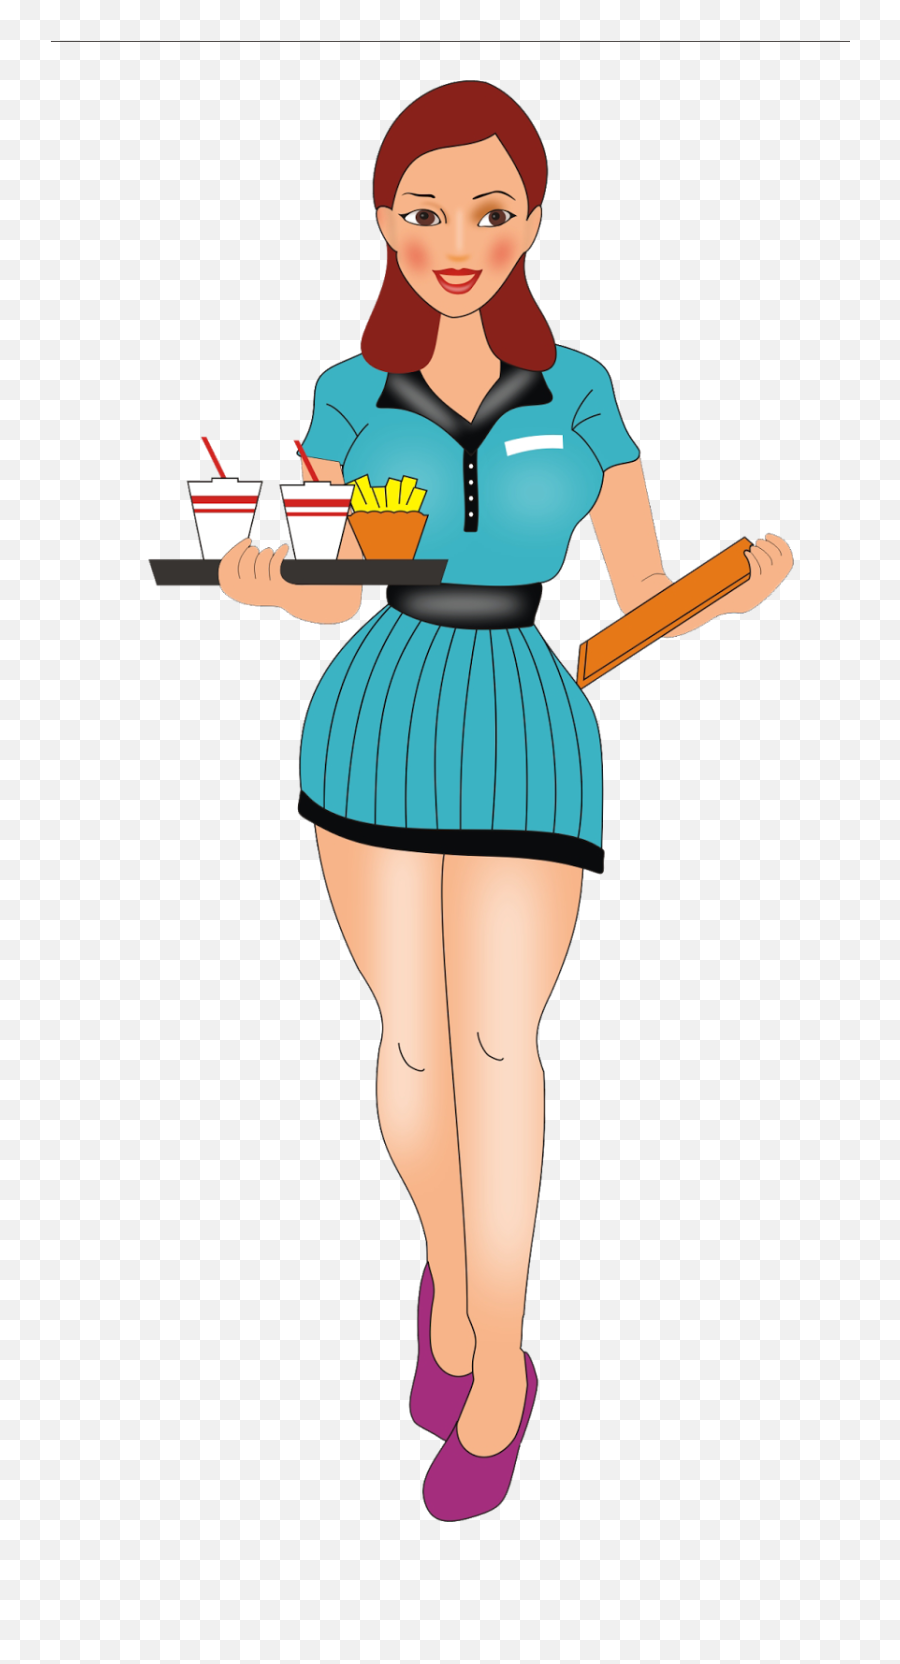 Jpg Transparent Download Cartoon Group - Waitress Cartoon Png,Waitress Png